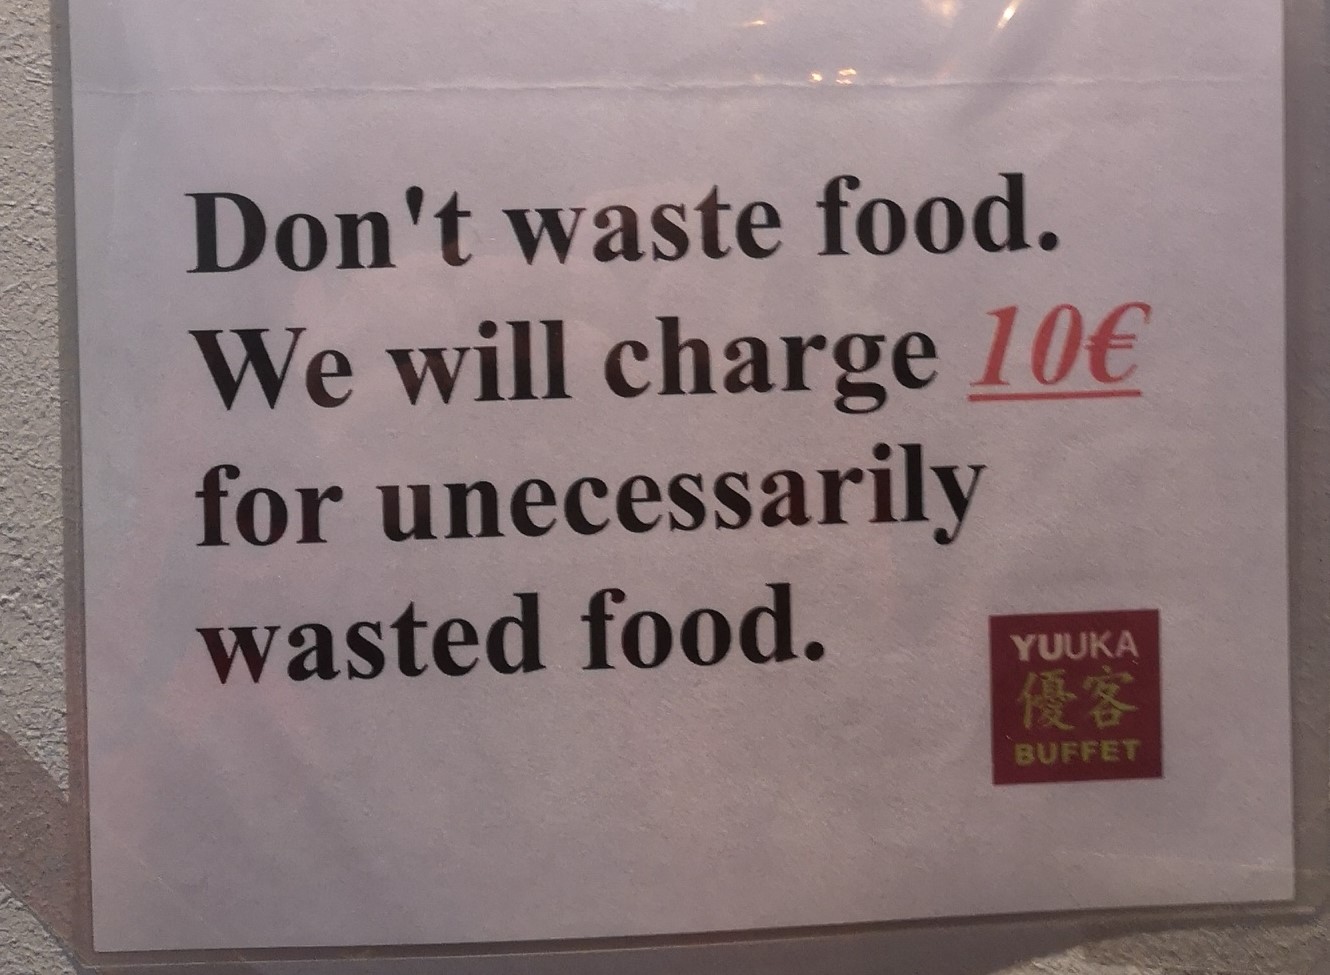 Berlin rulez! Walka z food waste to również ograniczanie resztek na talerzach